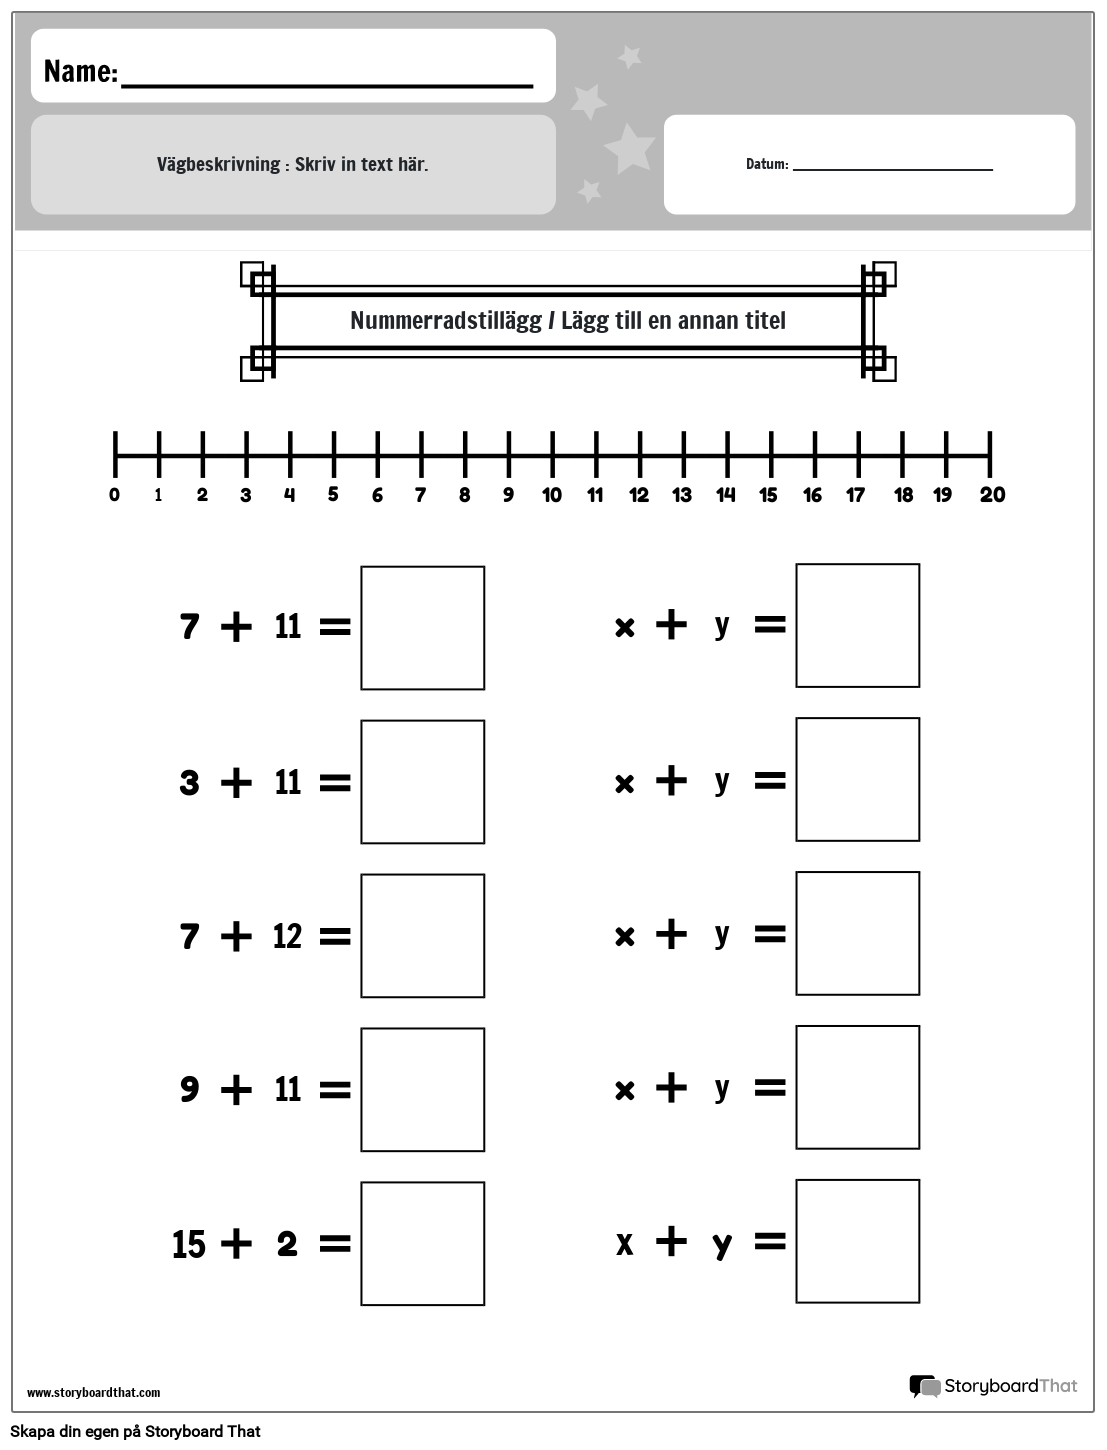 Kalkylblad för addition av talrad (svartvitt)